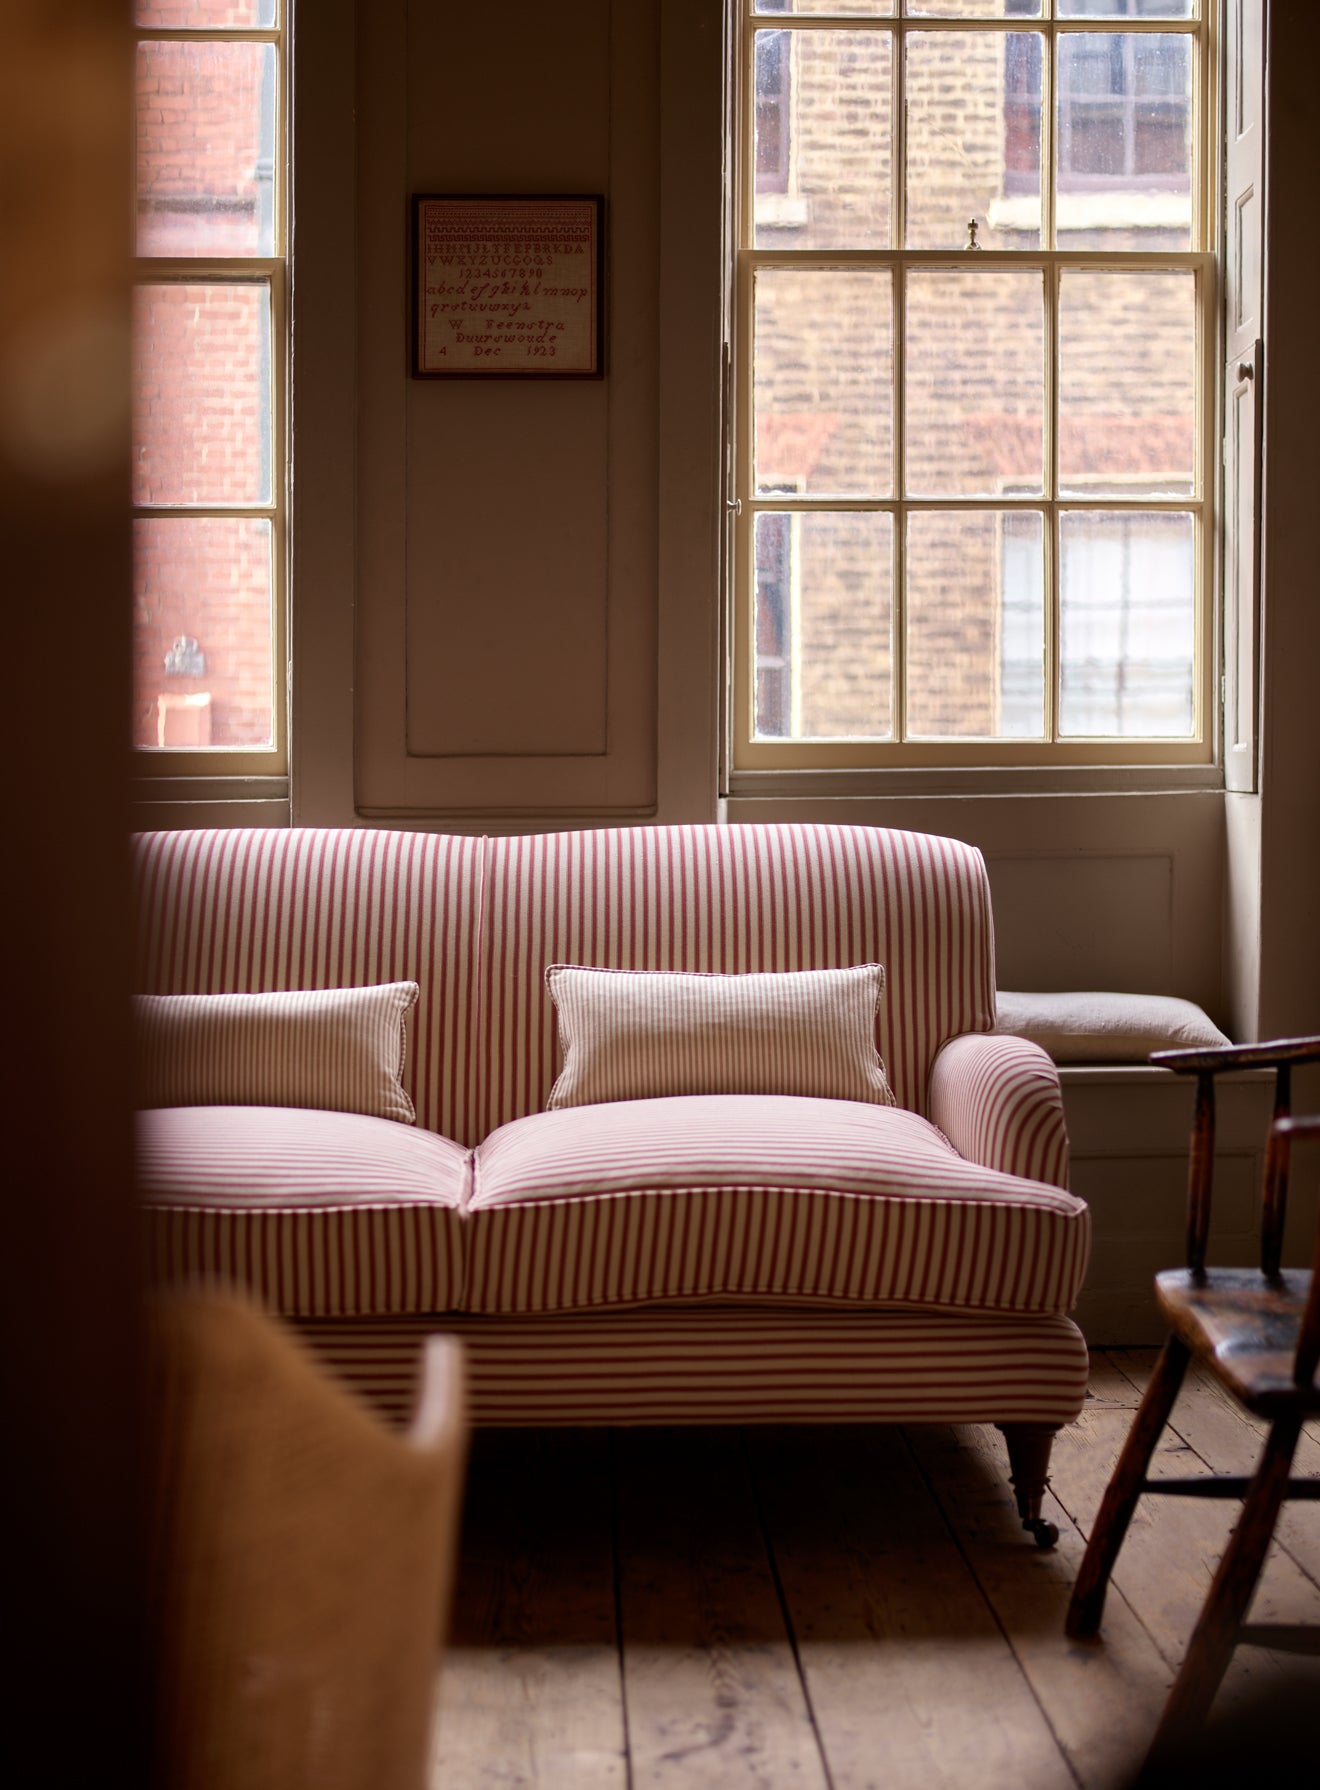 Abington Sofa, Abstract Stripe